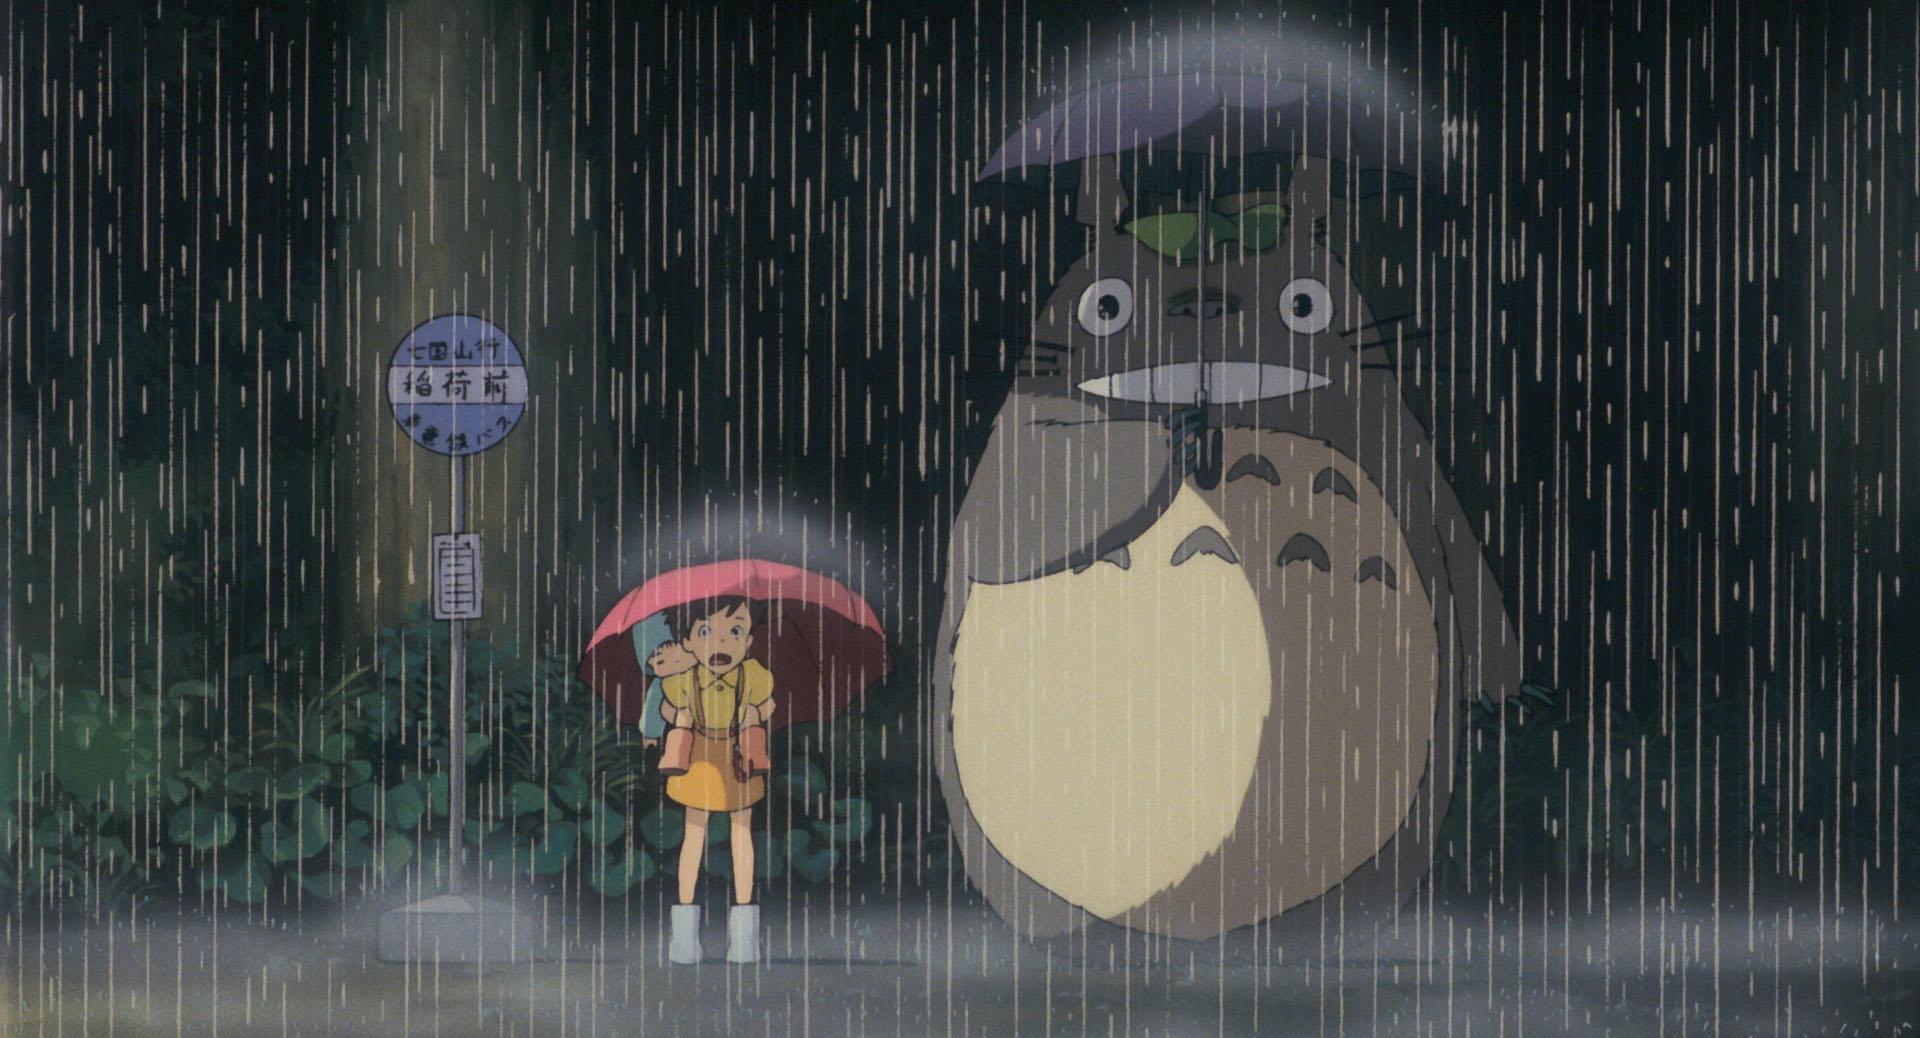 UI UX Quote - My Neighbor Totoro by Hayao Miyazaki